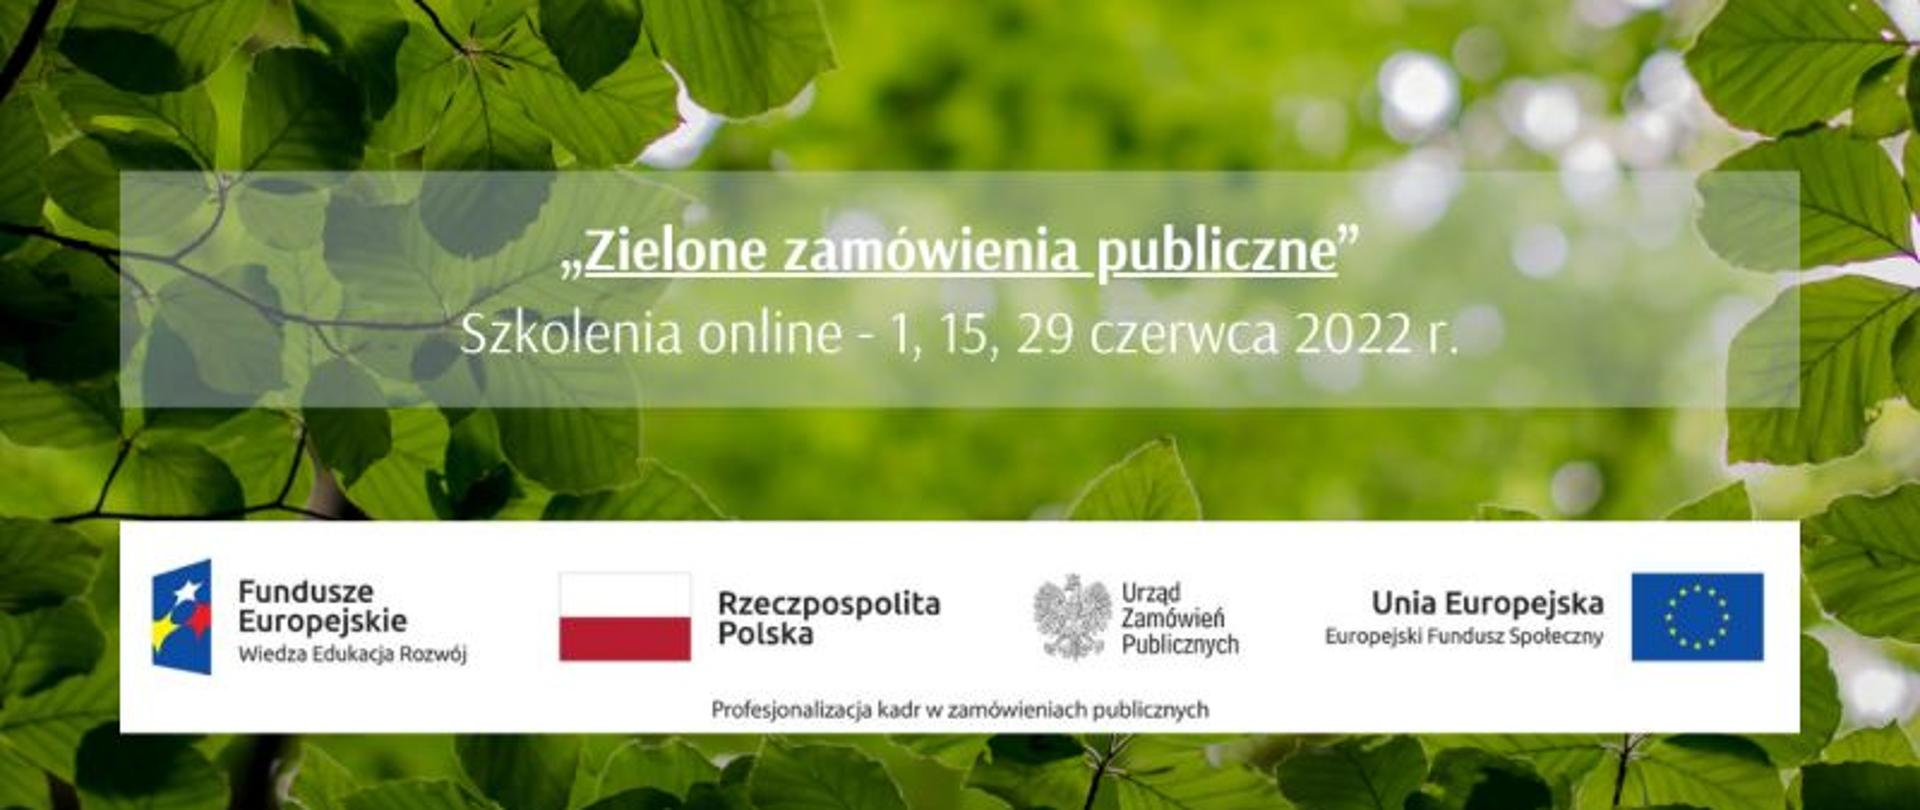 Zielone zamówienia publiczne - Szkolenia 2022 r.